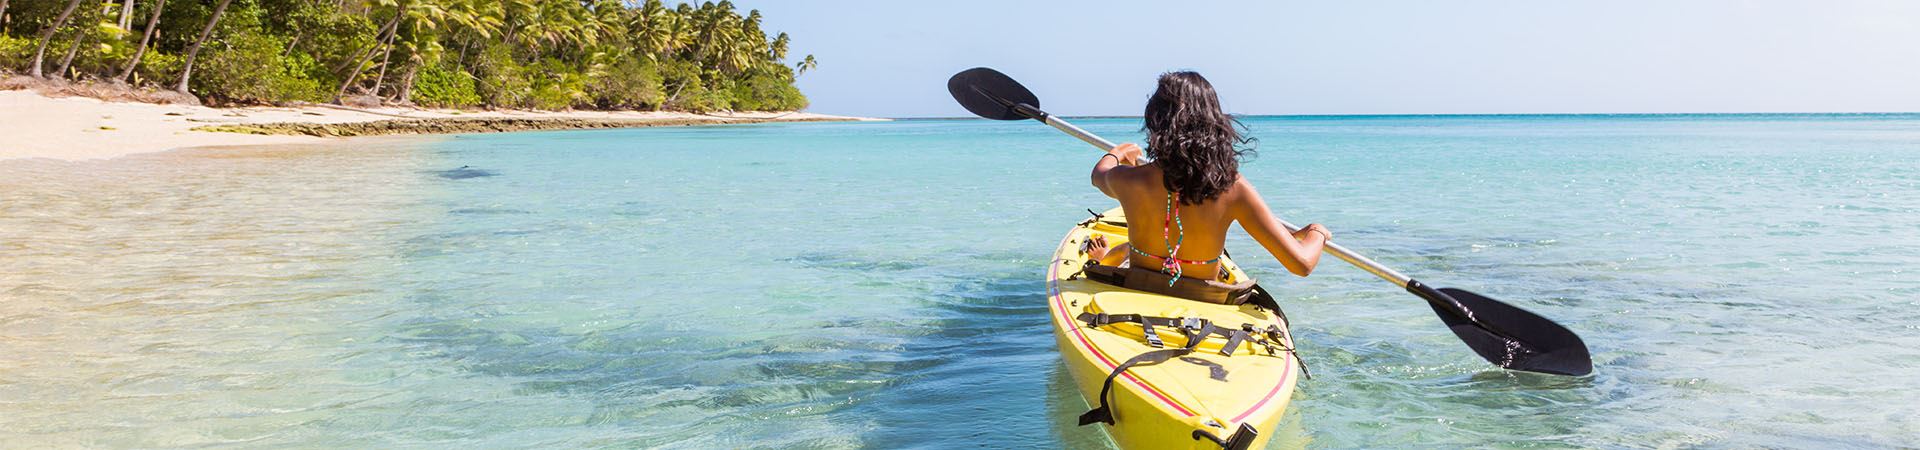 Dieses Bild zeigt ein Mädchen von hinten, das mit einem Kanu auf dem Meer fährt. Das Kanu ist gelb und im Hintergrund des Bildes sieht man Sand und etwas Vegetation, was darauf hindeutet, dass es sich in der Nähe des Strandes befindet.